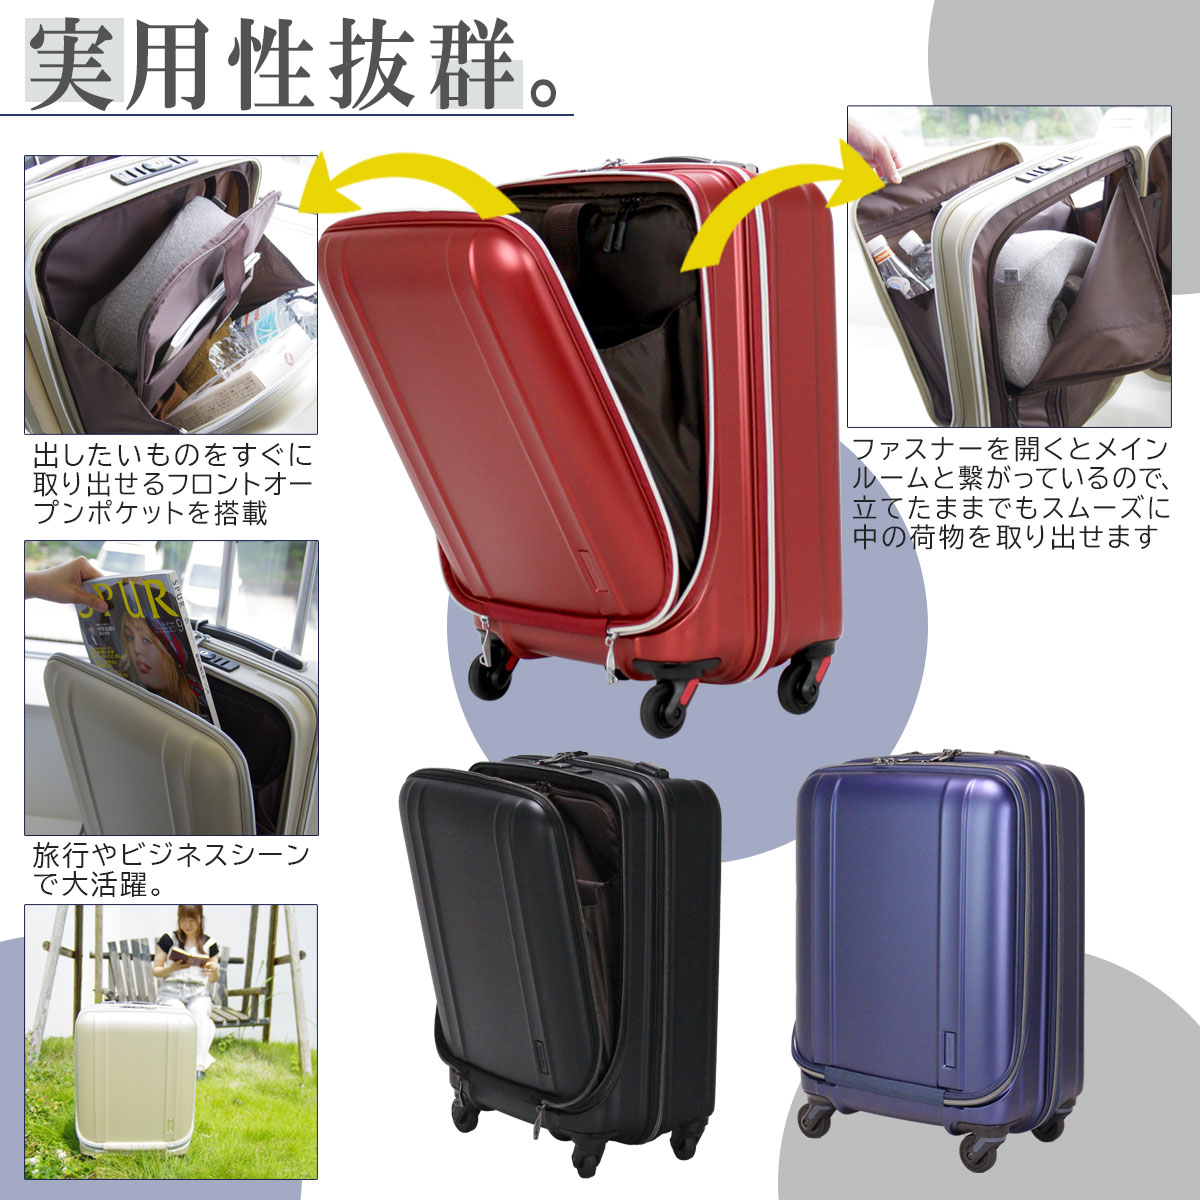 超軽量スーツケースZERO GRA | シフレオンラインストア